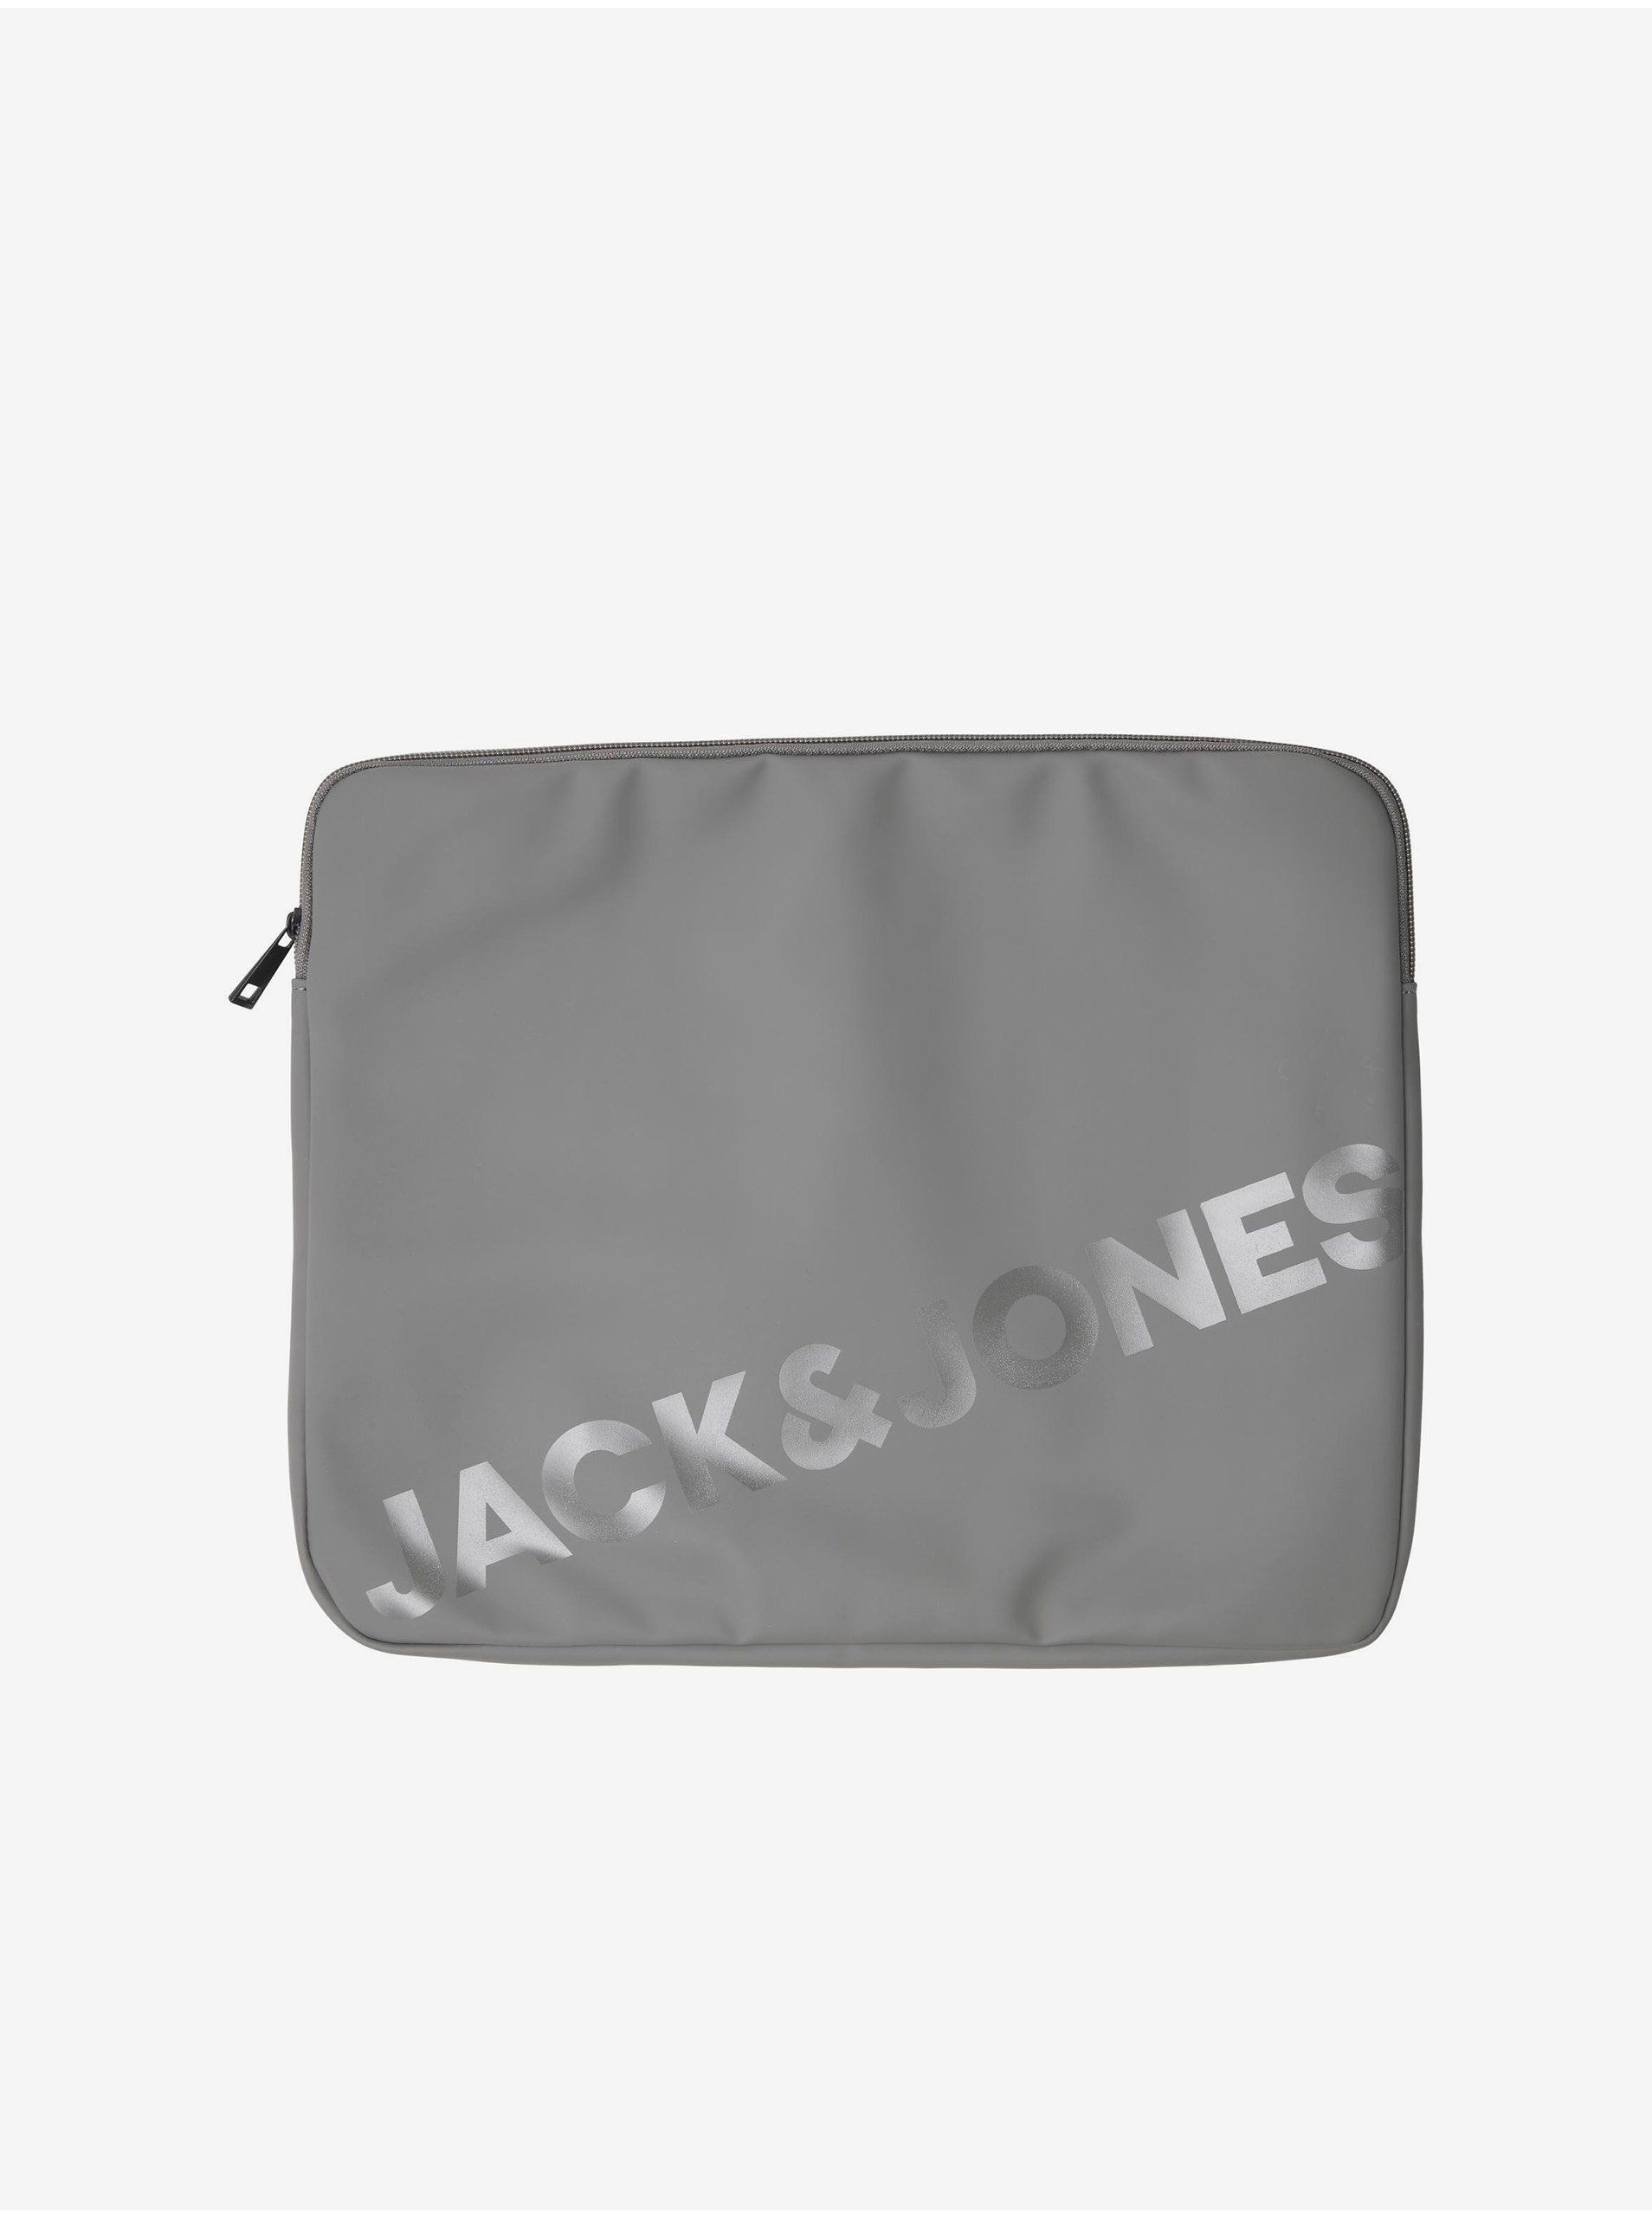 Lacno Tašky, ľadvinky pre mužov Jack & Jones - sivá